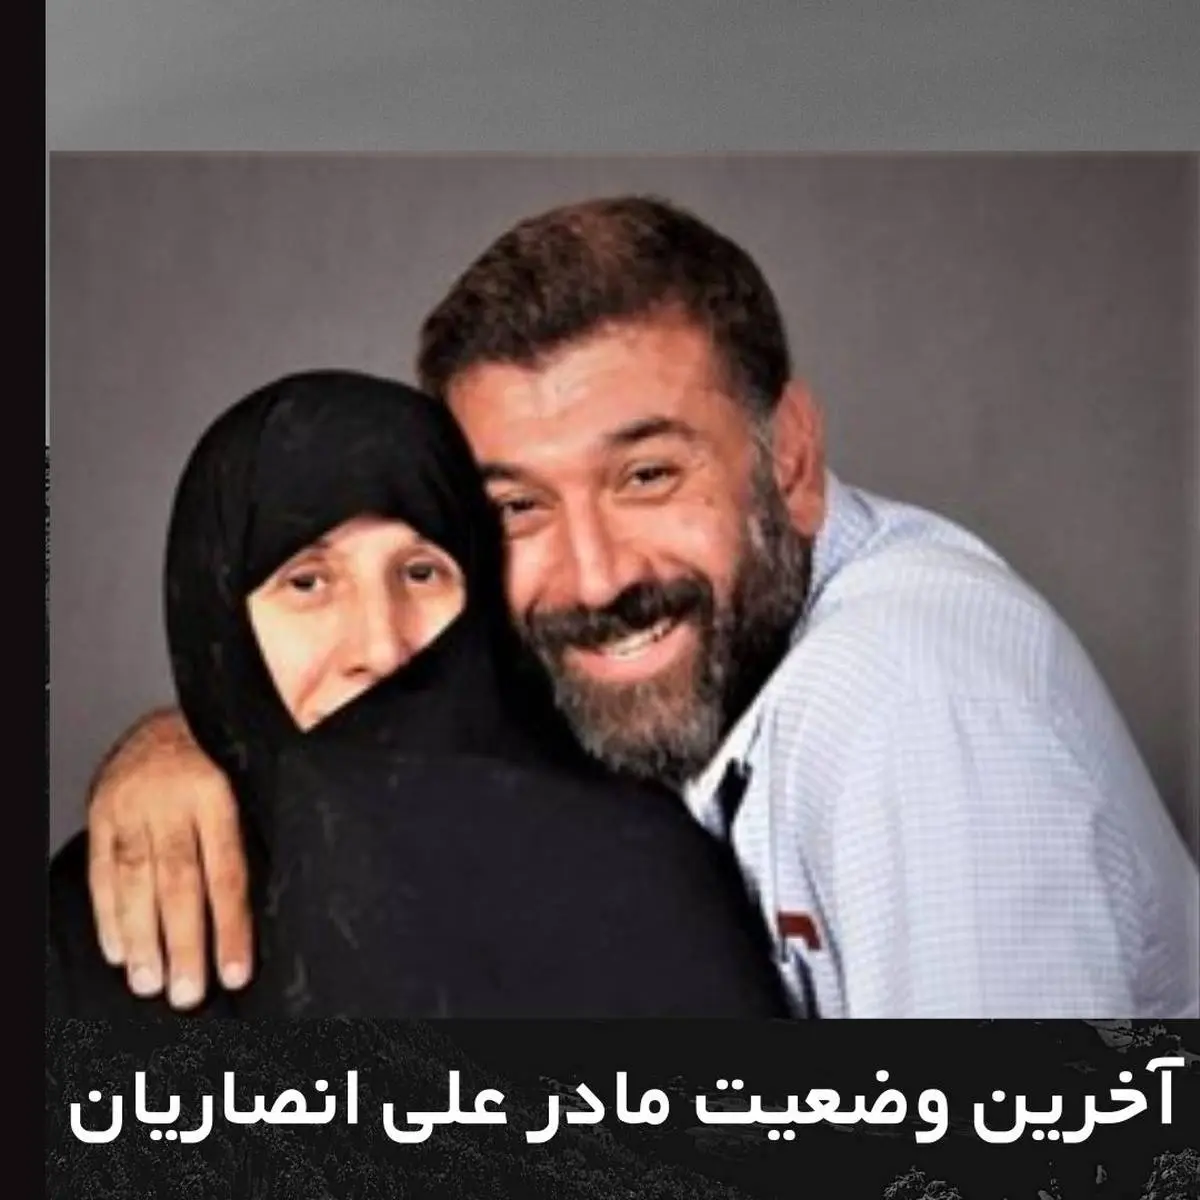 آخرین اخبار از حال مادر علی انصاریان در بیمارستان + عکس